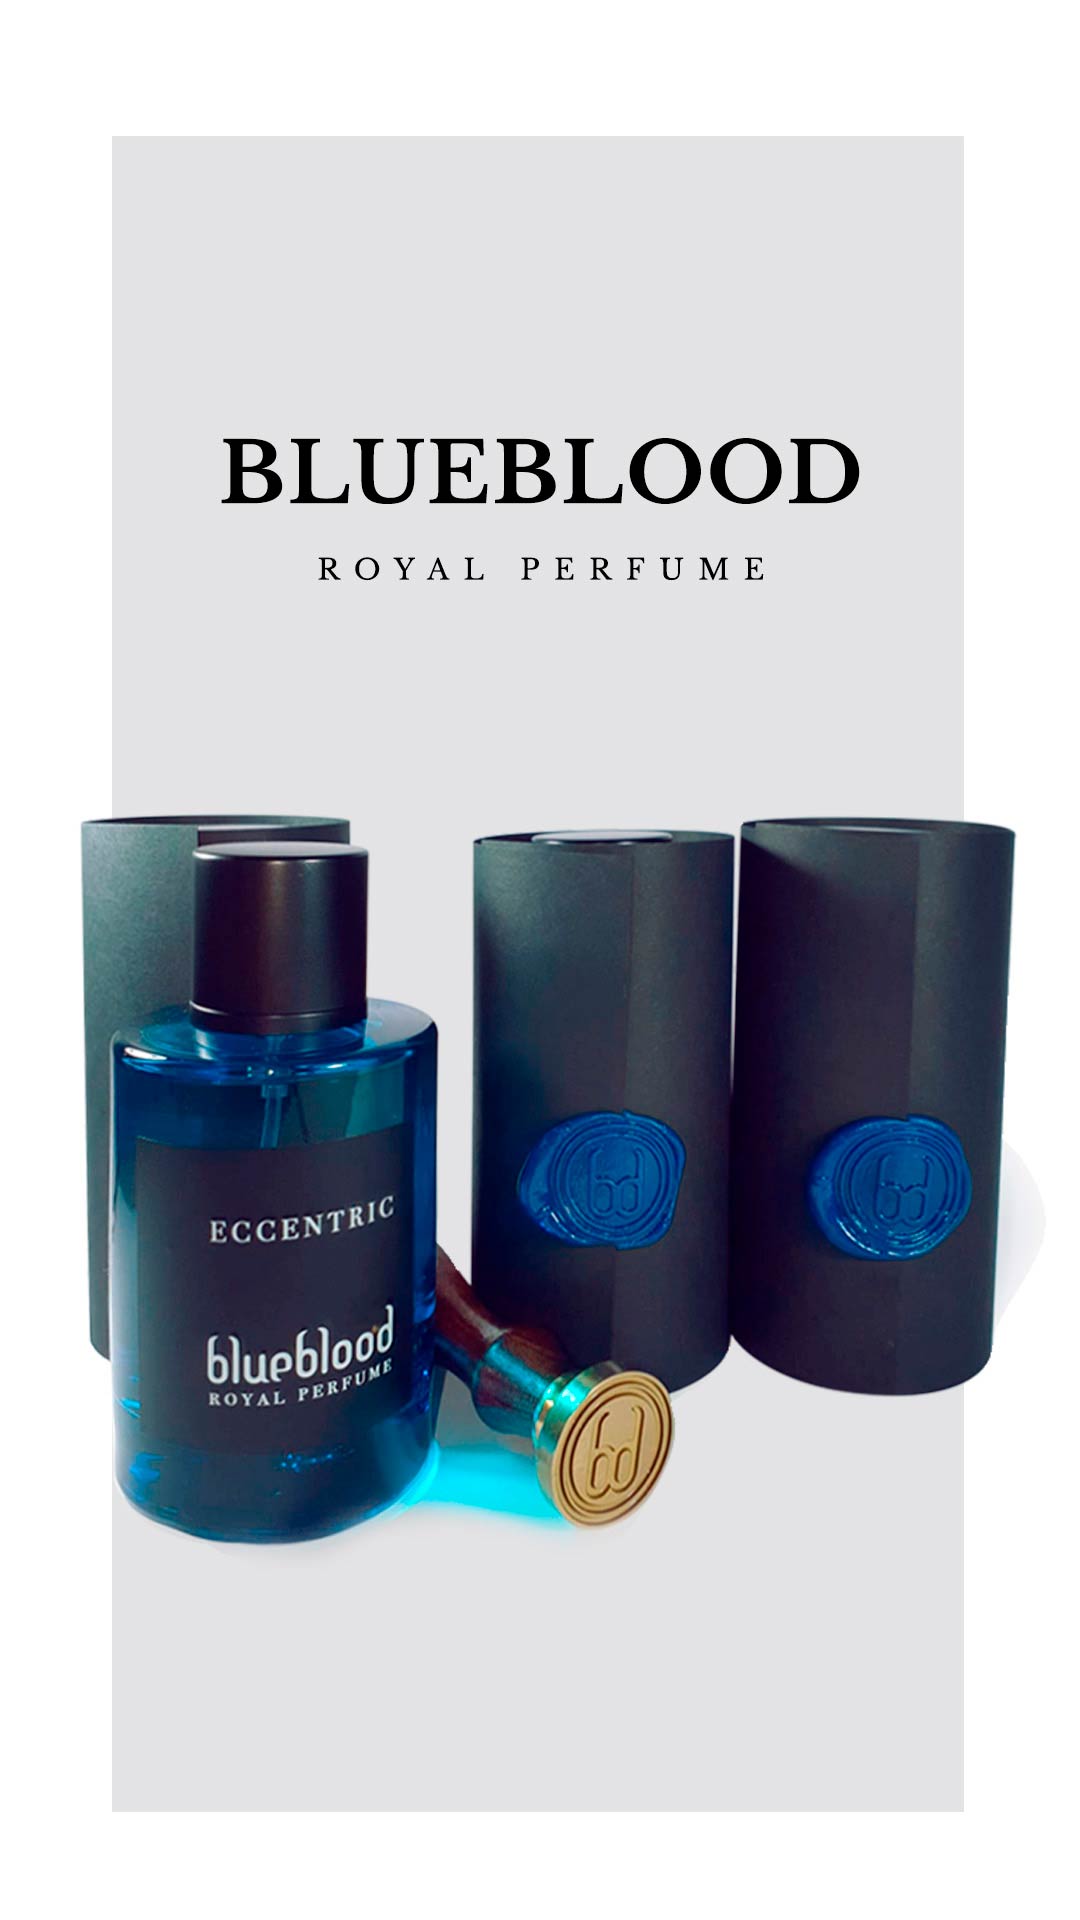 Proyecto Blueblood - Esenssi Aromas: Fabrica de Perfumes de Equivalencia